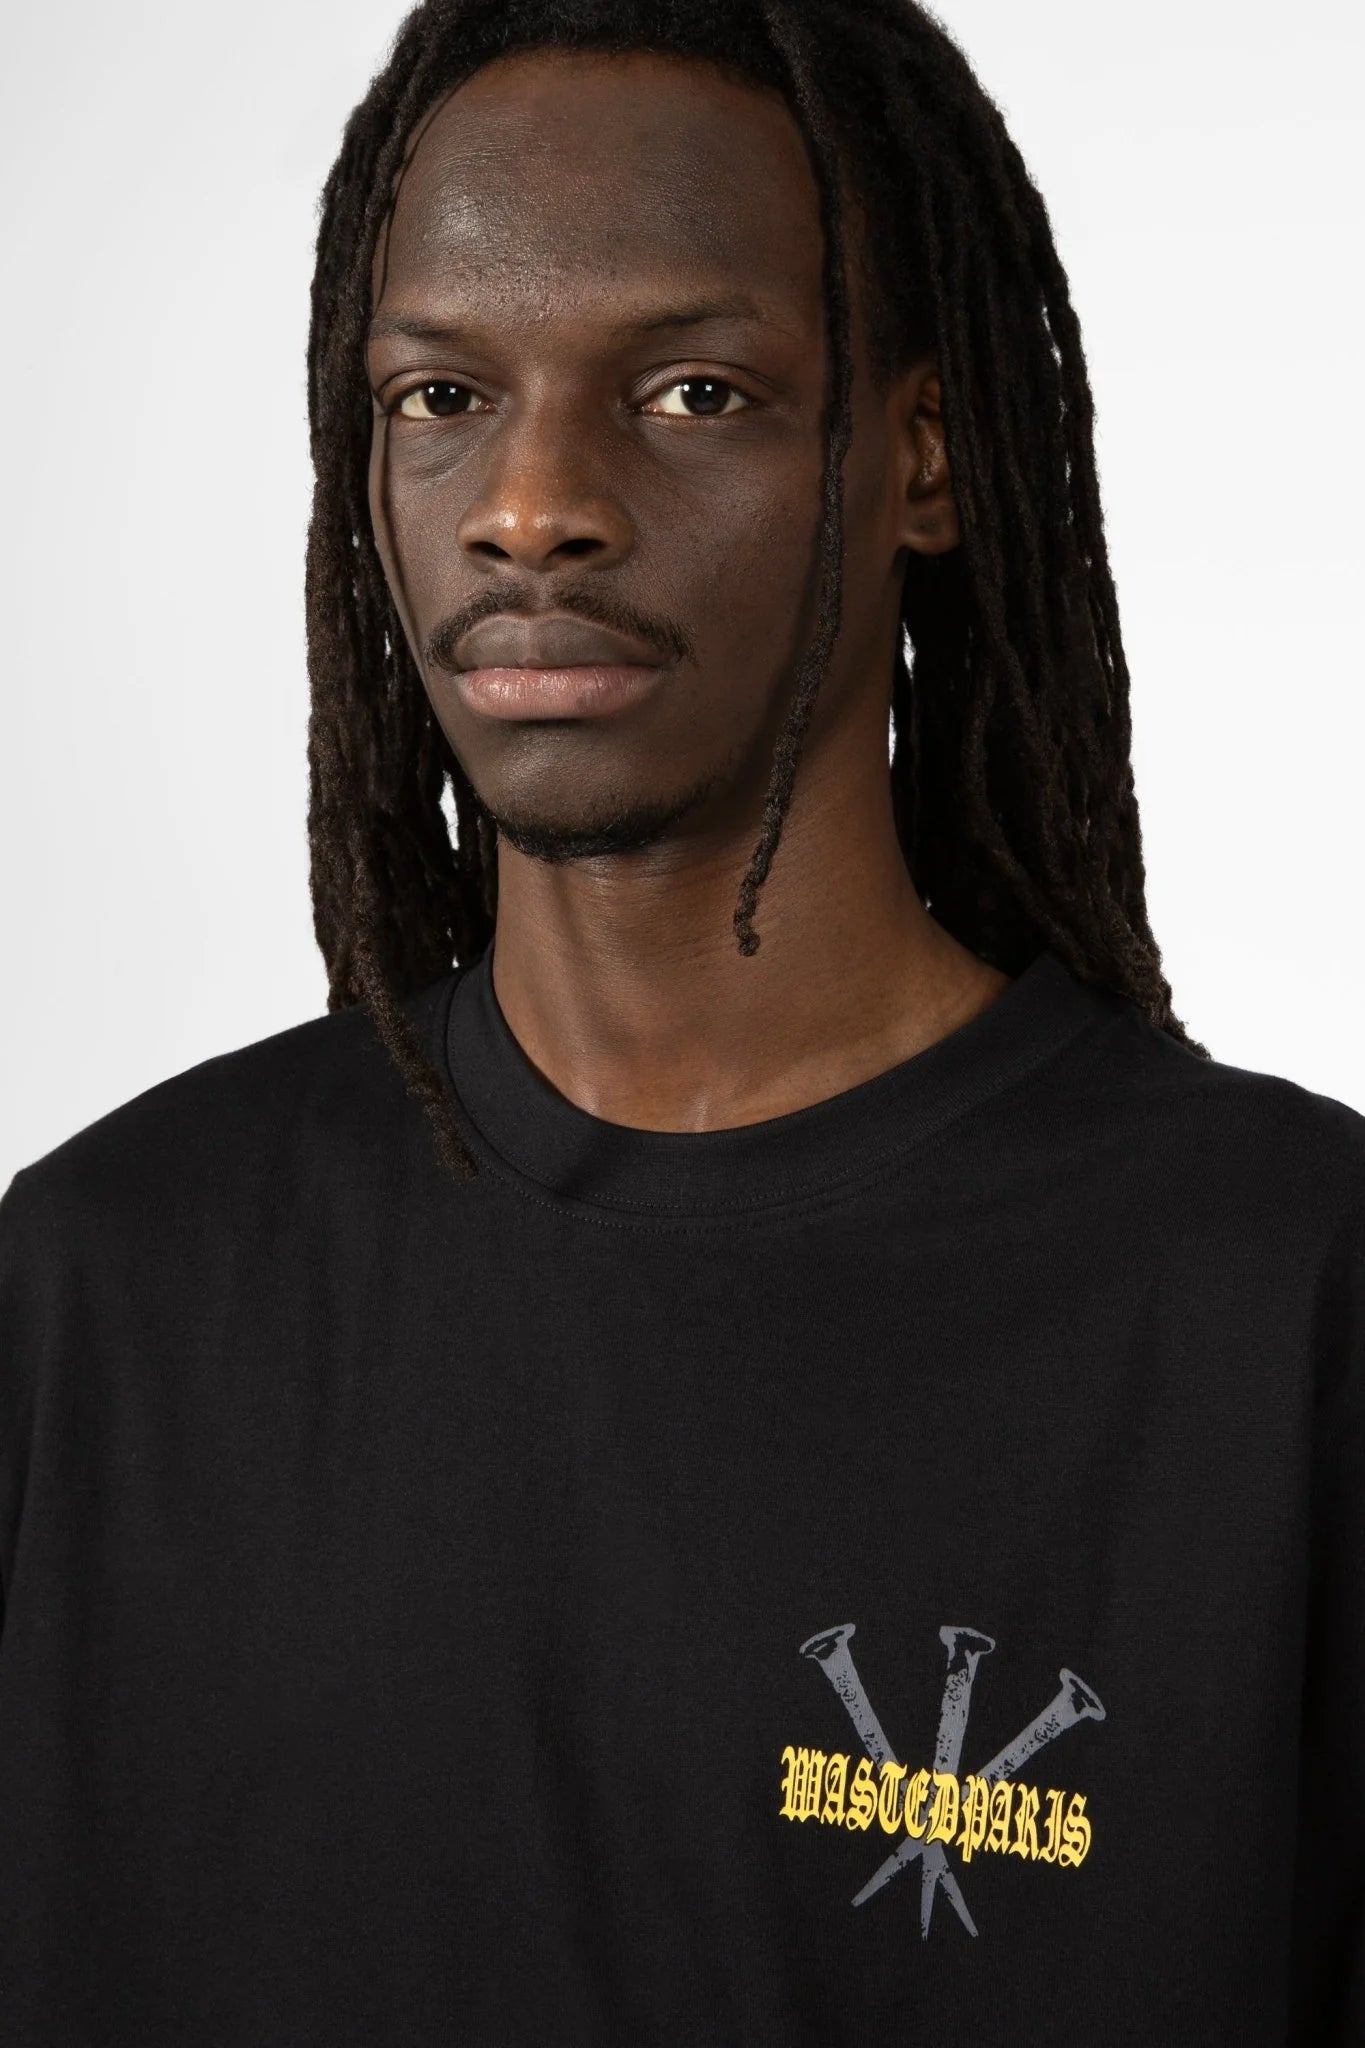 Camiseta Stake Negra - WASTED PARIS